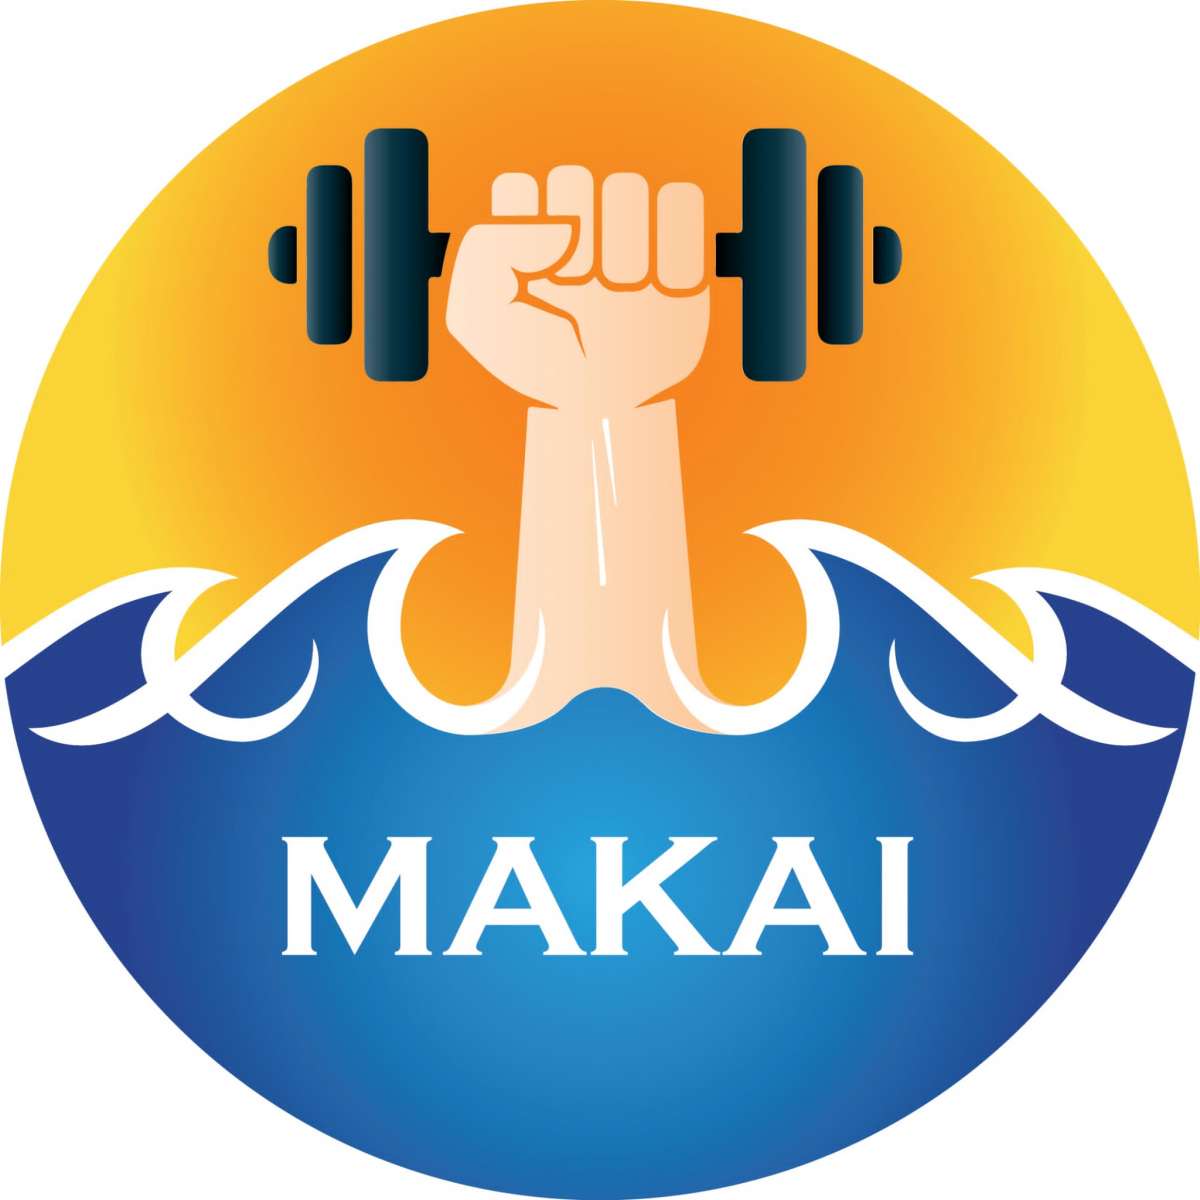 Makai Personal Training - Matosinhos - Treino de TRX